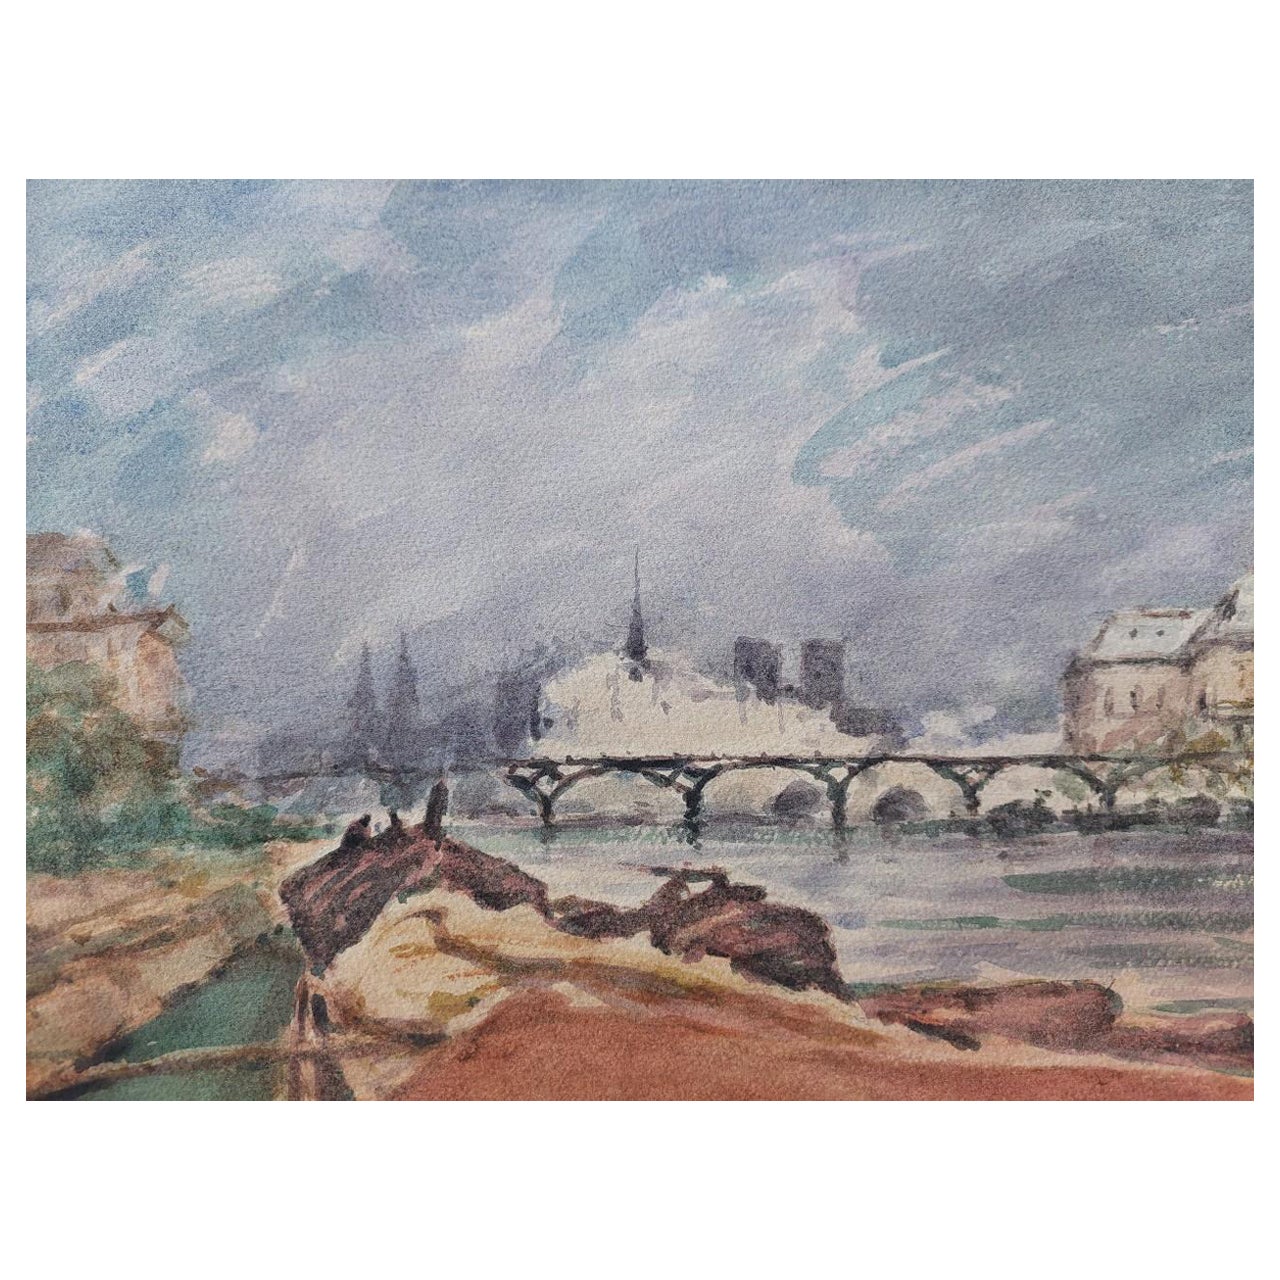 Peinture cubiste française moderniste de la rivière Seine Paris